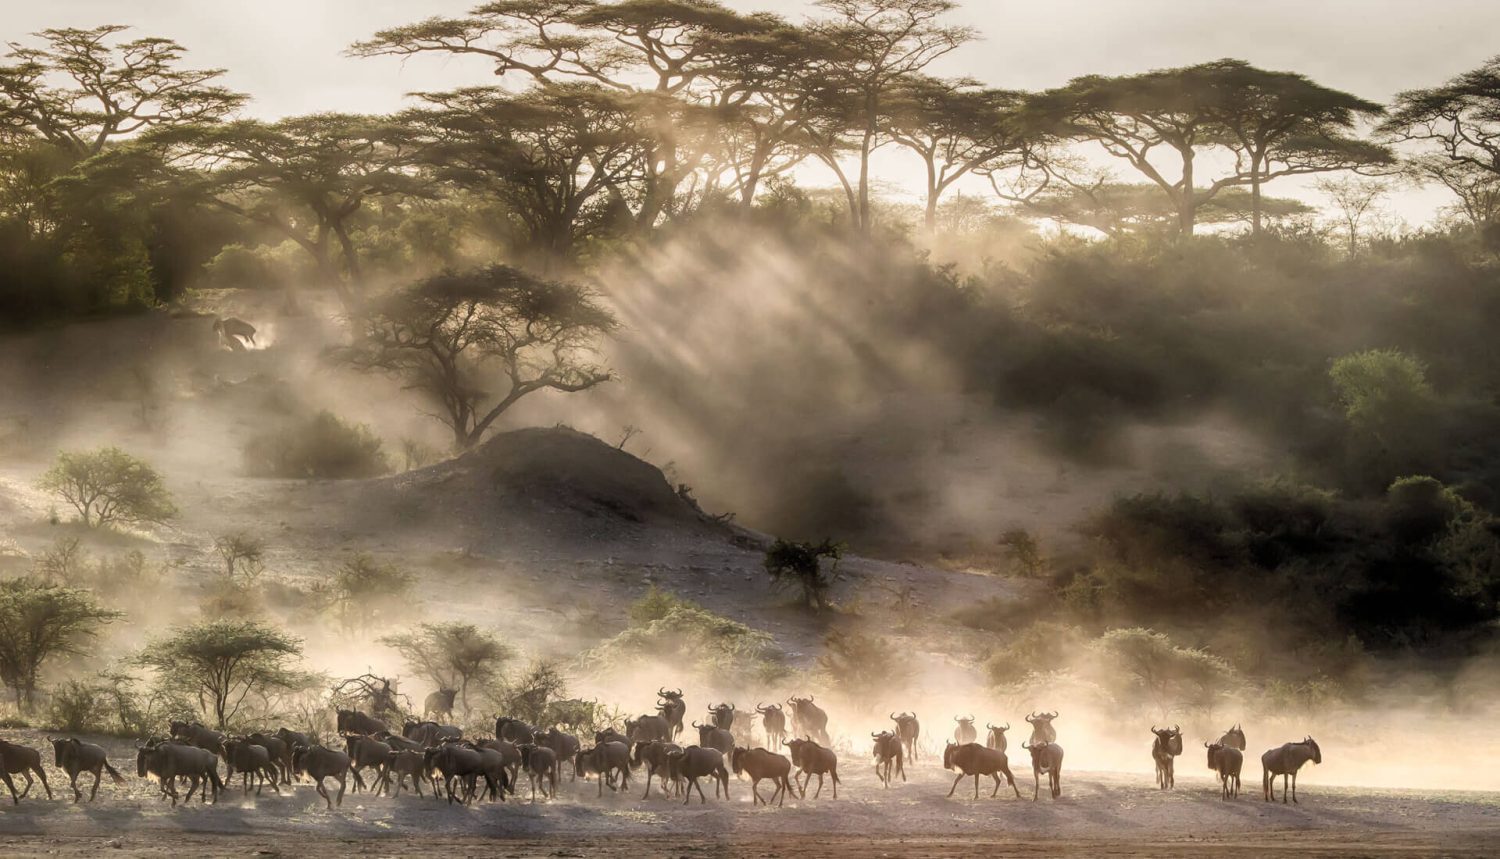 Wildebeest Migration Masai Mara Safari